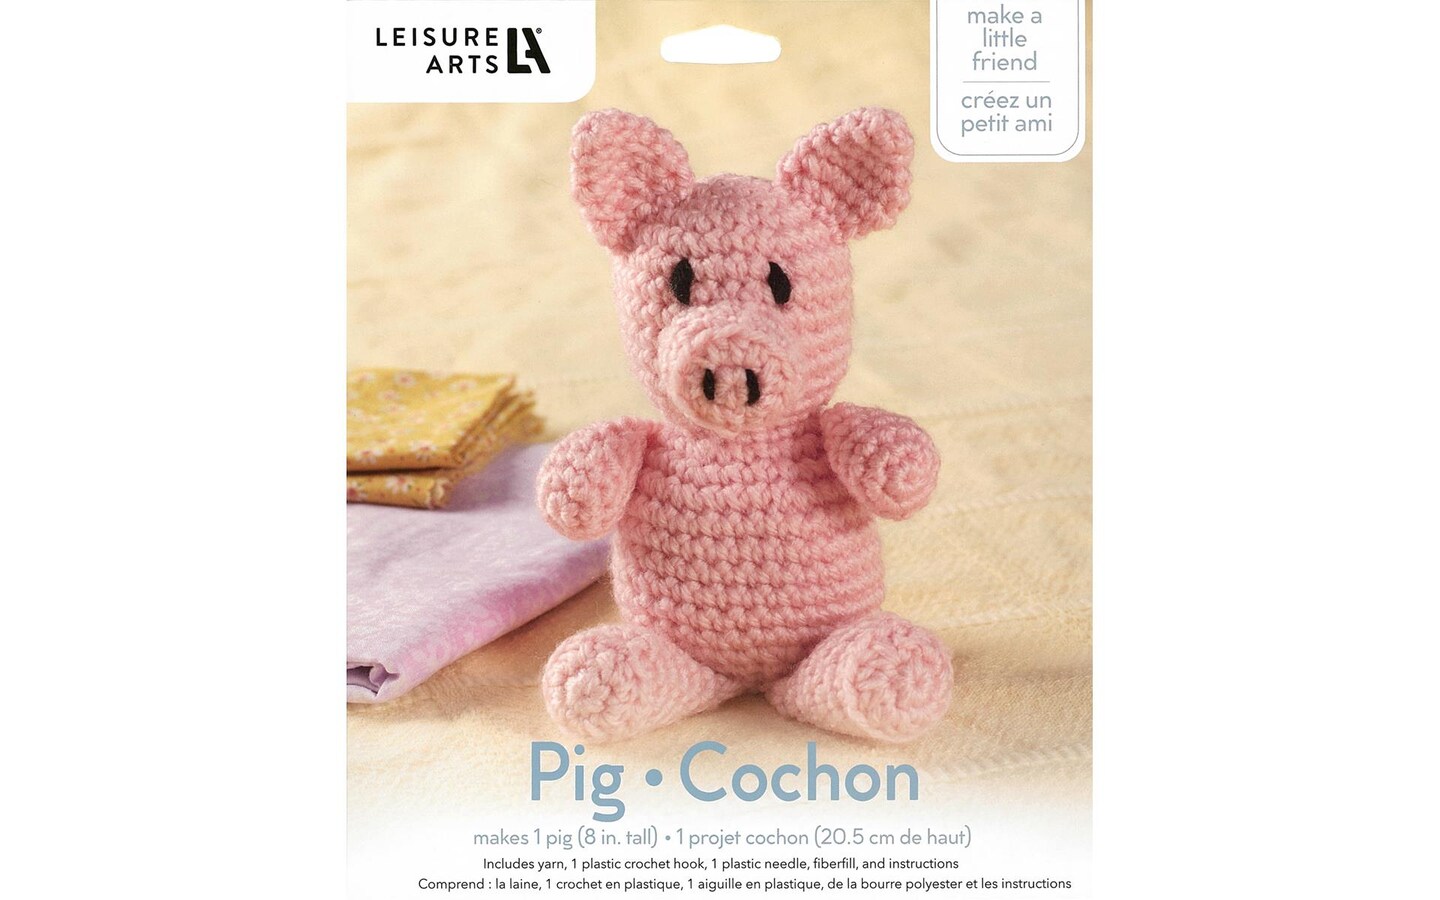  Crochet Kit for Beginners, Animal Crochet Starter Kit